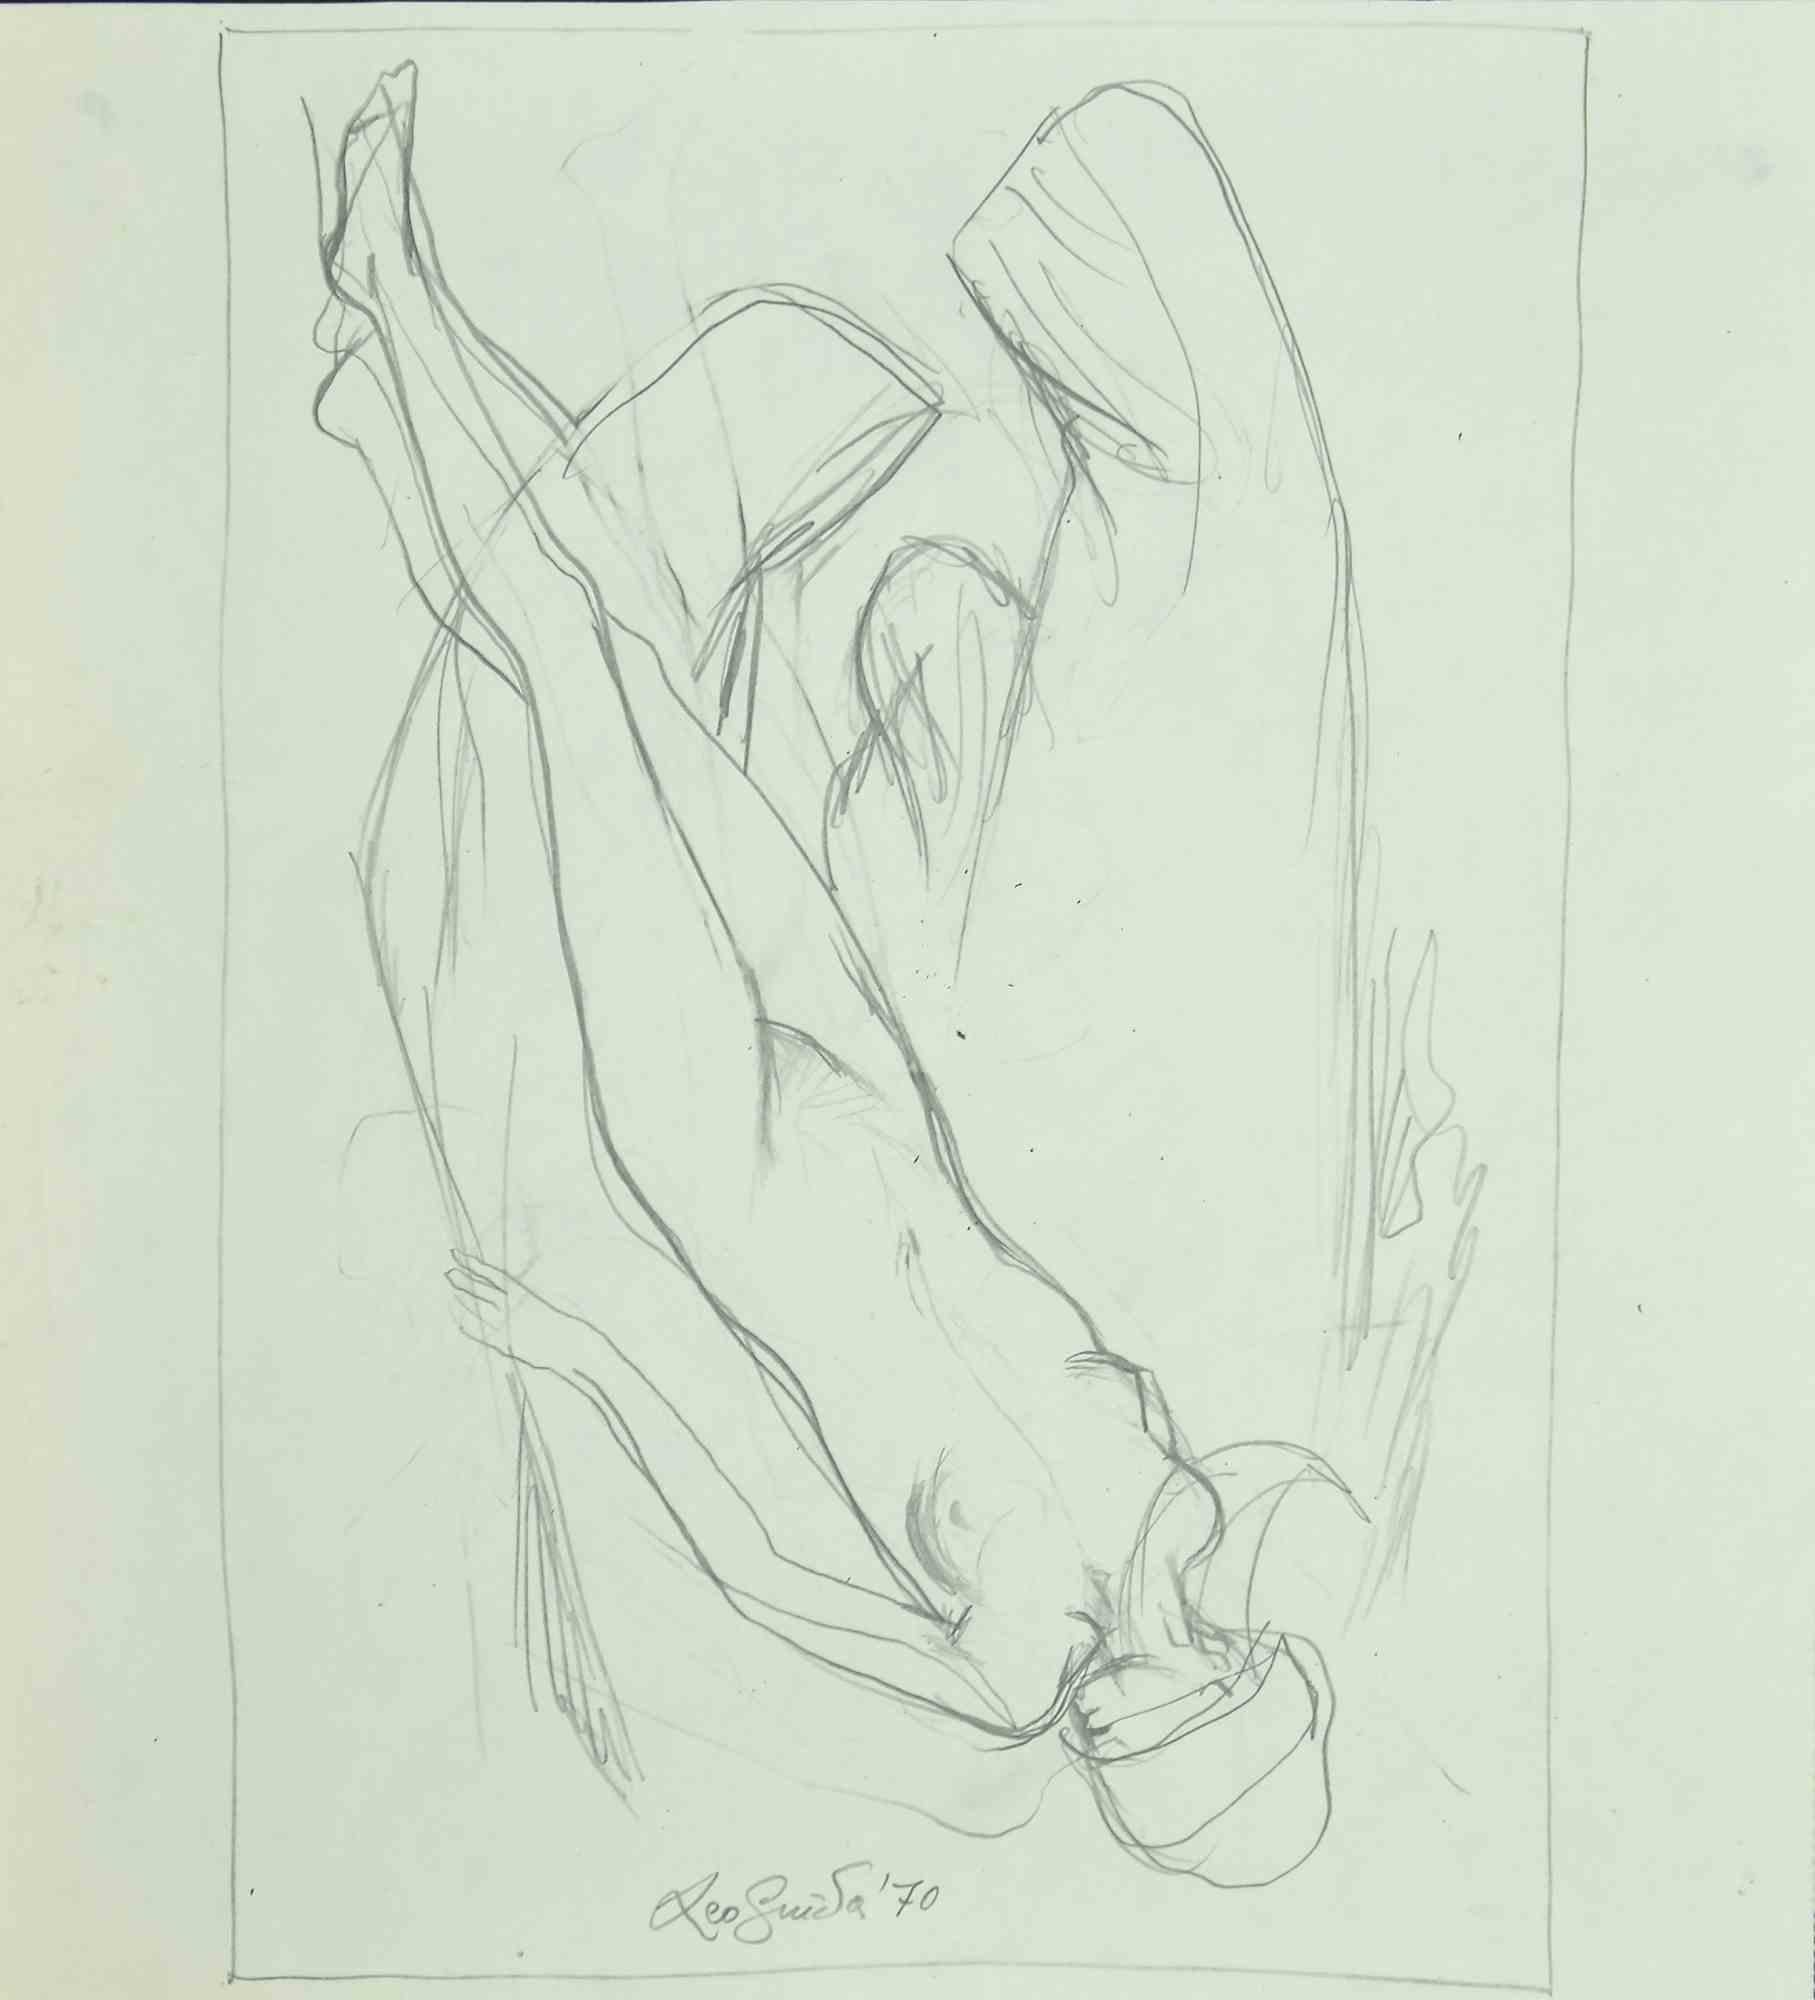 Nude ist ein originales Kunstwerk, realisiert  1970 von dem italienischen zeitgenössischen Künstler  Leo Guida  (1992 - 2017).

Original-Bleistiftzeichnung auf elfenbeinfarbenem Papier.

Am unteren Rand handsigniert und datiert. 

Ausgezeichnete